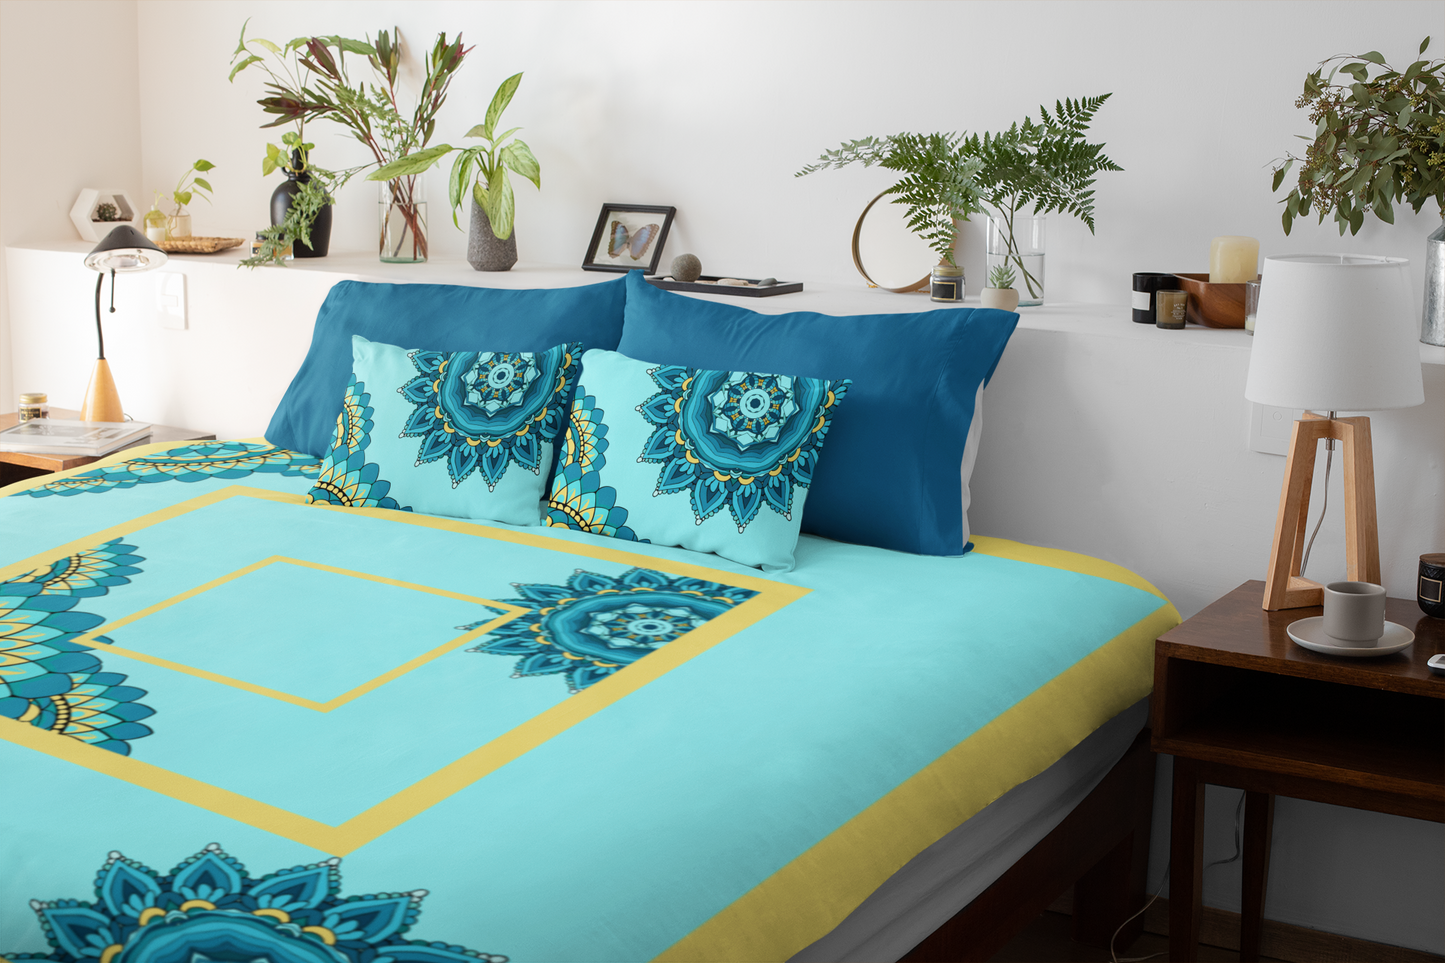 Mandala Flower Pattern Blanket Warm Cozy Comforter